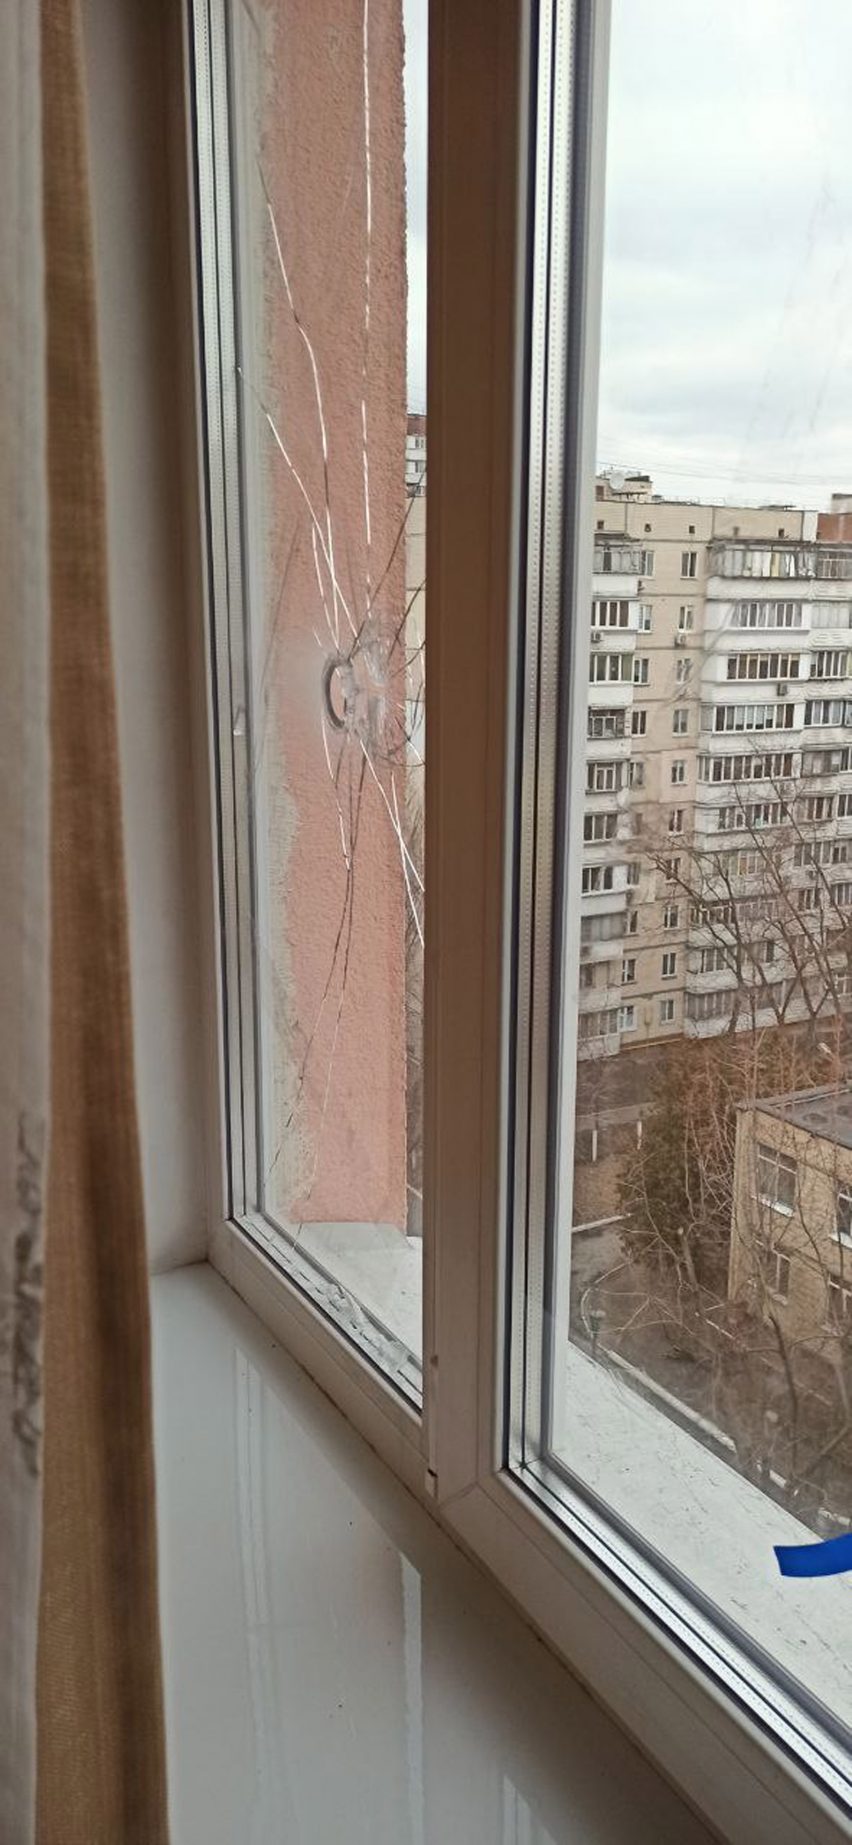 Bullet hole in a window in Ukraine